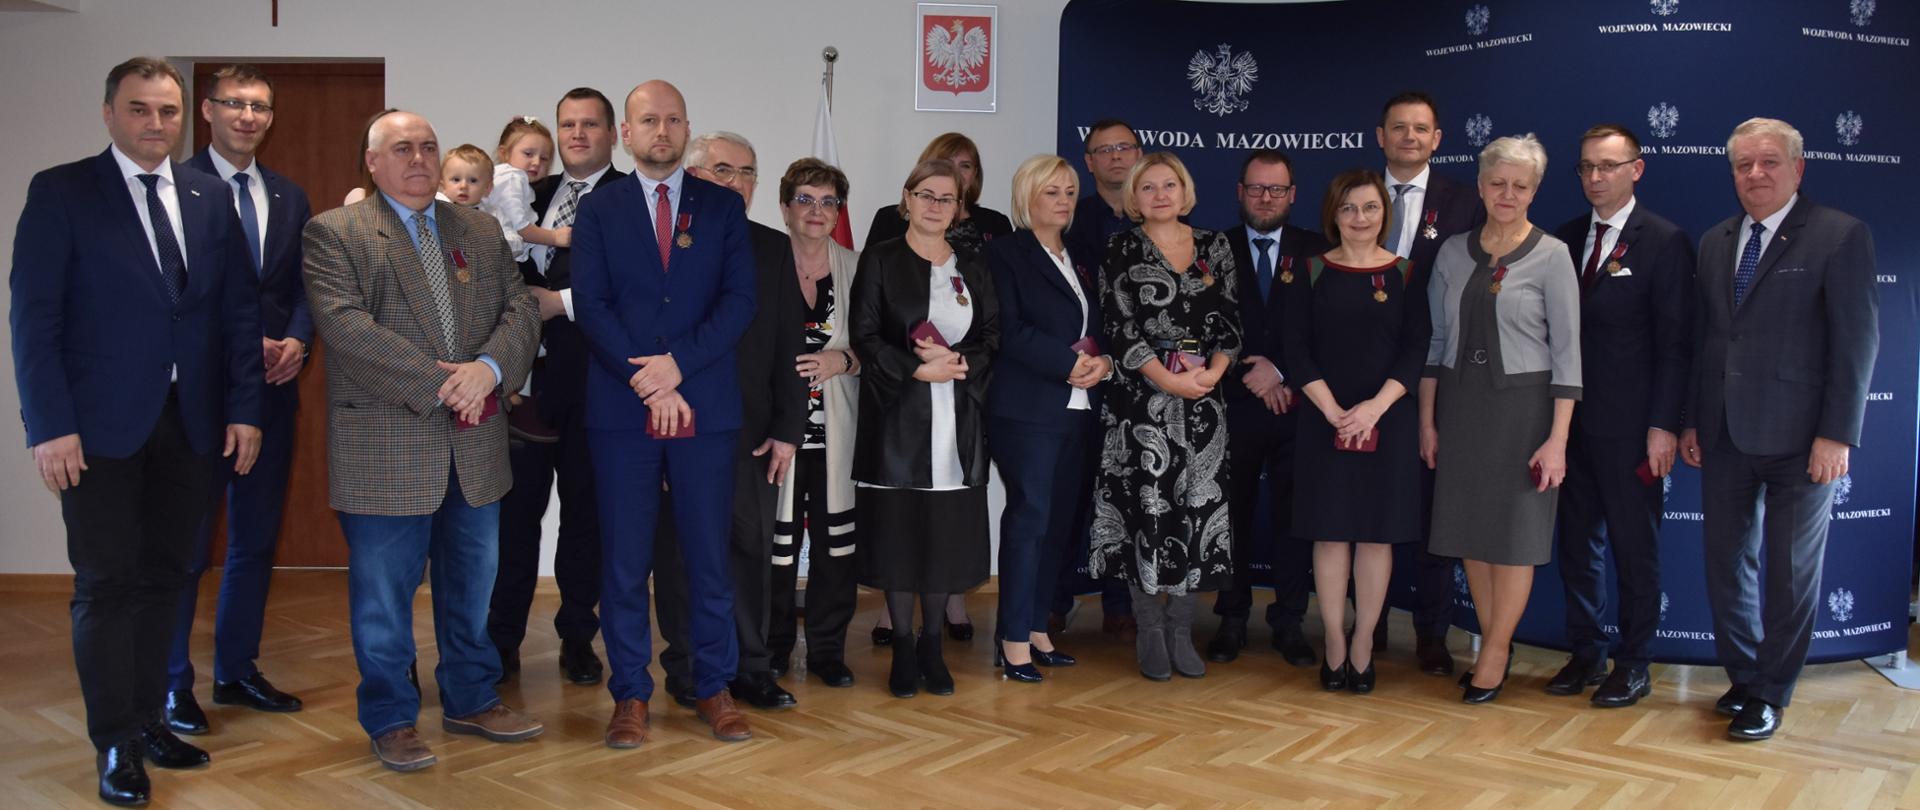 Uroczystość wręczenia odznaczeń państwowych w Delegaturze Mazowieckiego Urzędu Wojewódzkiego w Ostrołęce